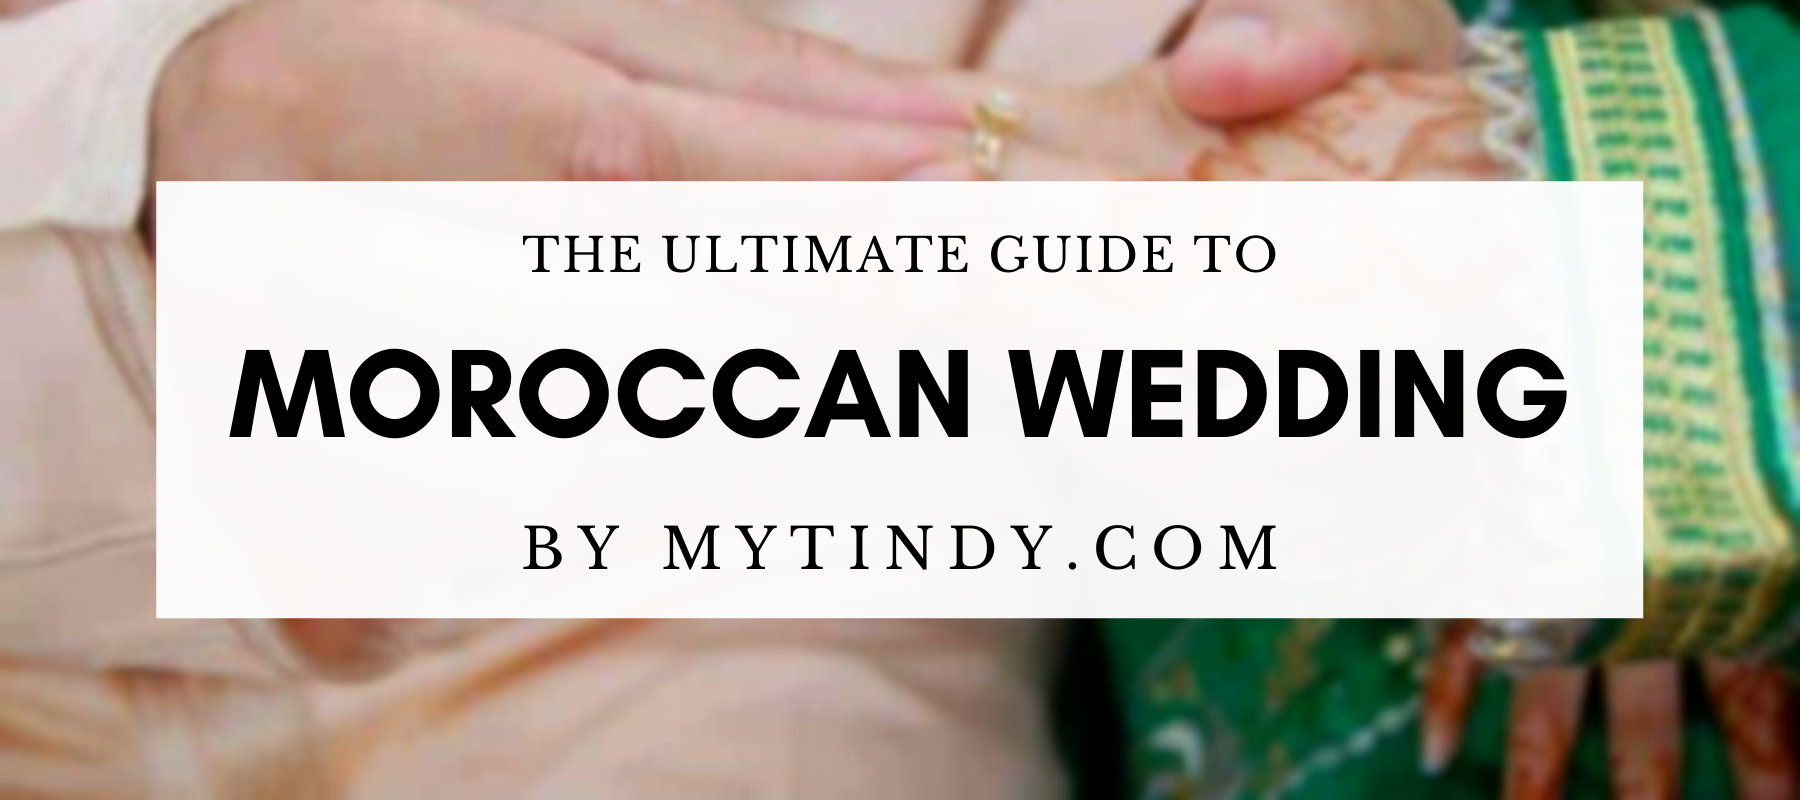 Moroccan weddings